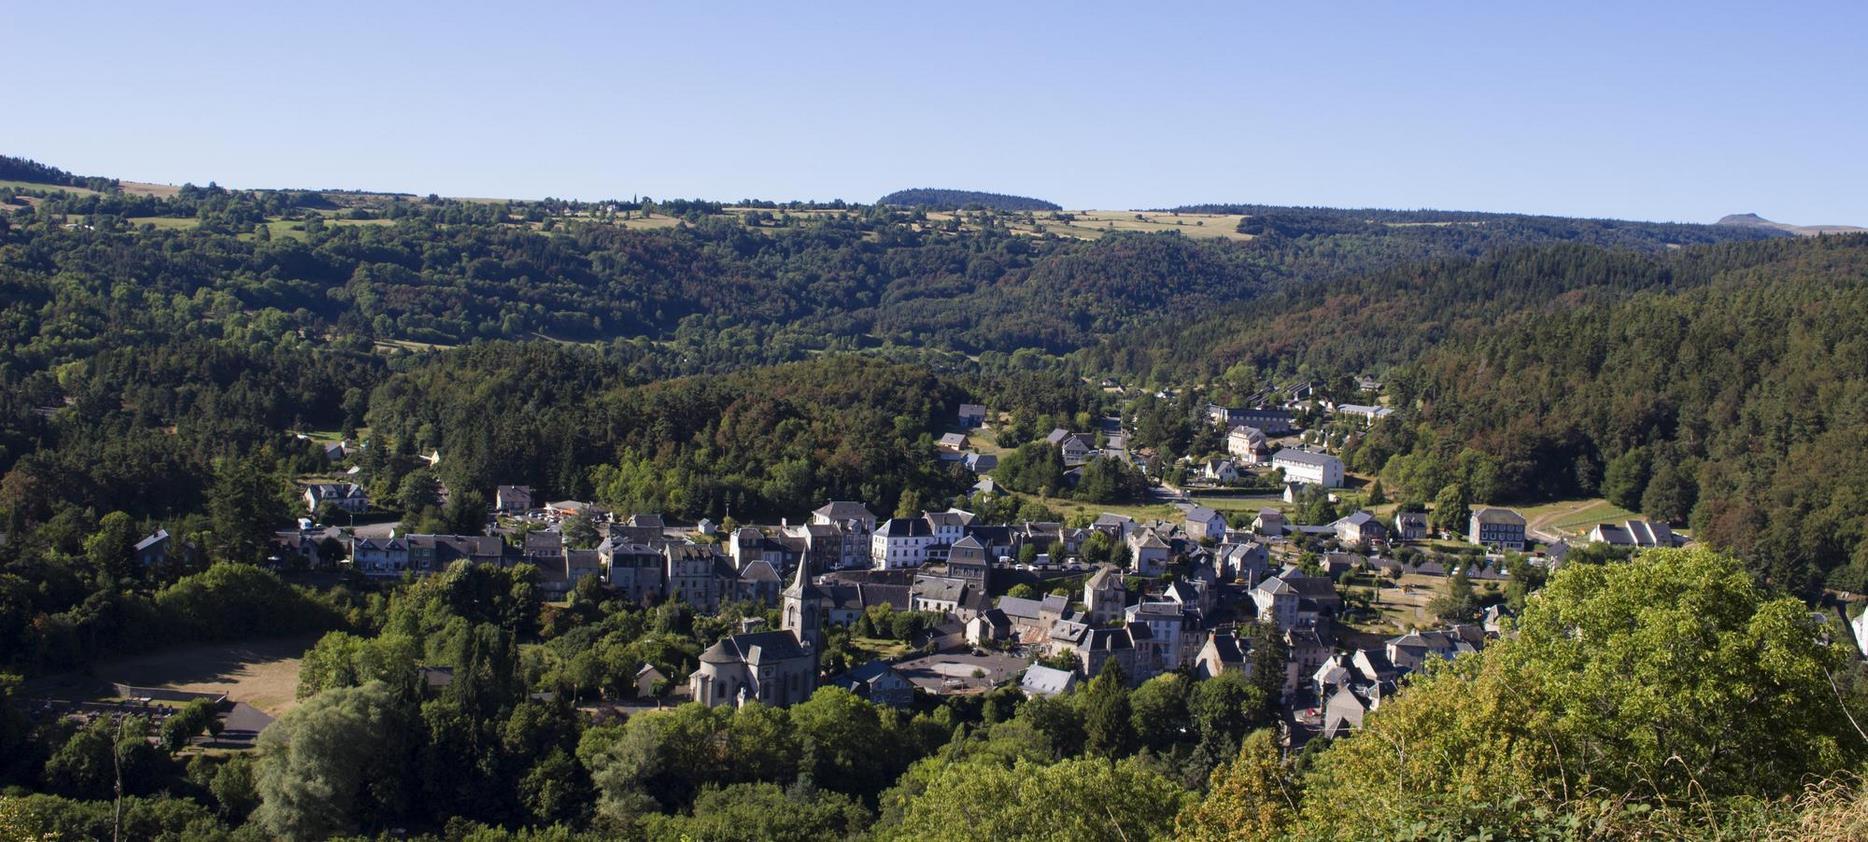 Village de Murol au pied du chateau de Murol en Auvergne